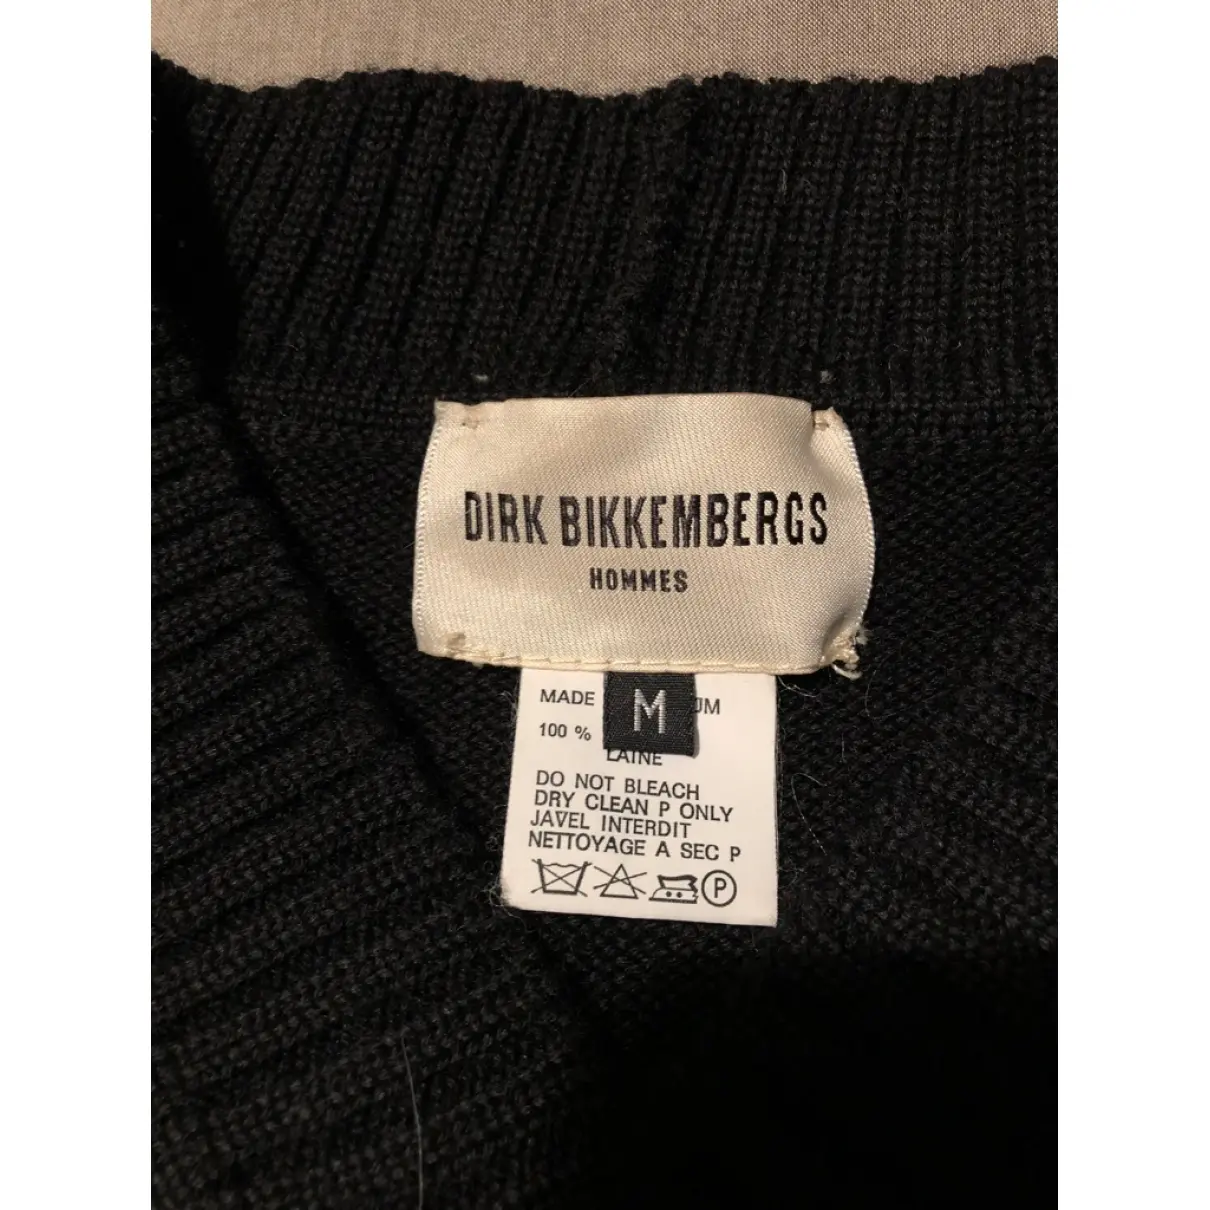 Buy Bikkembergs Wool pull online - Vintage